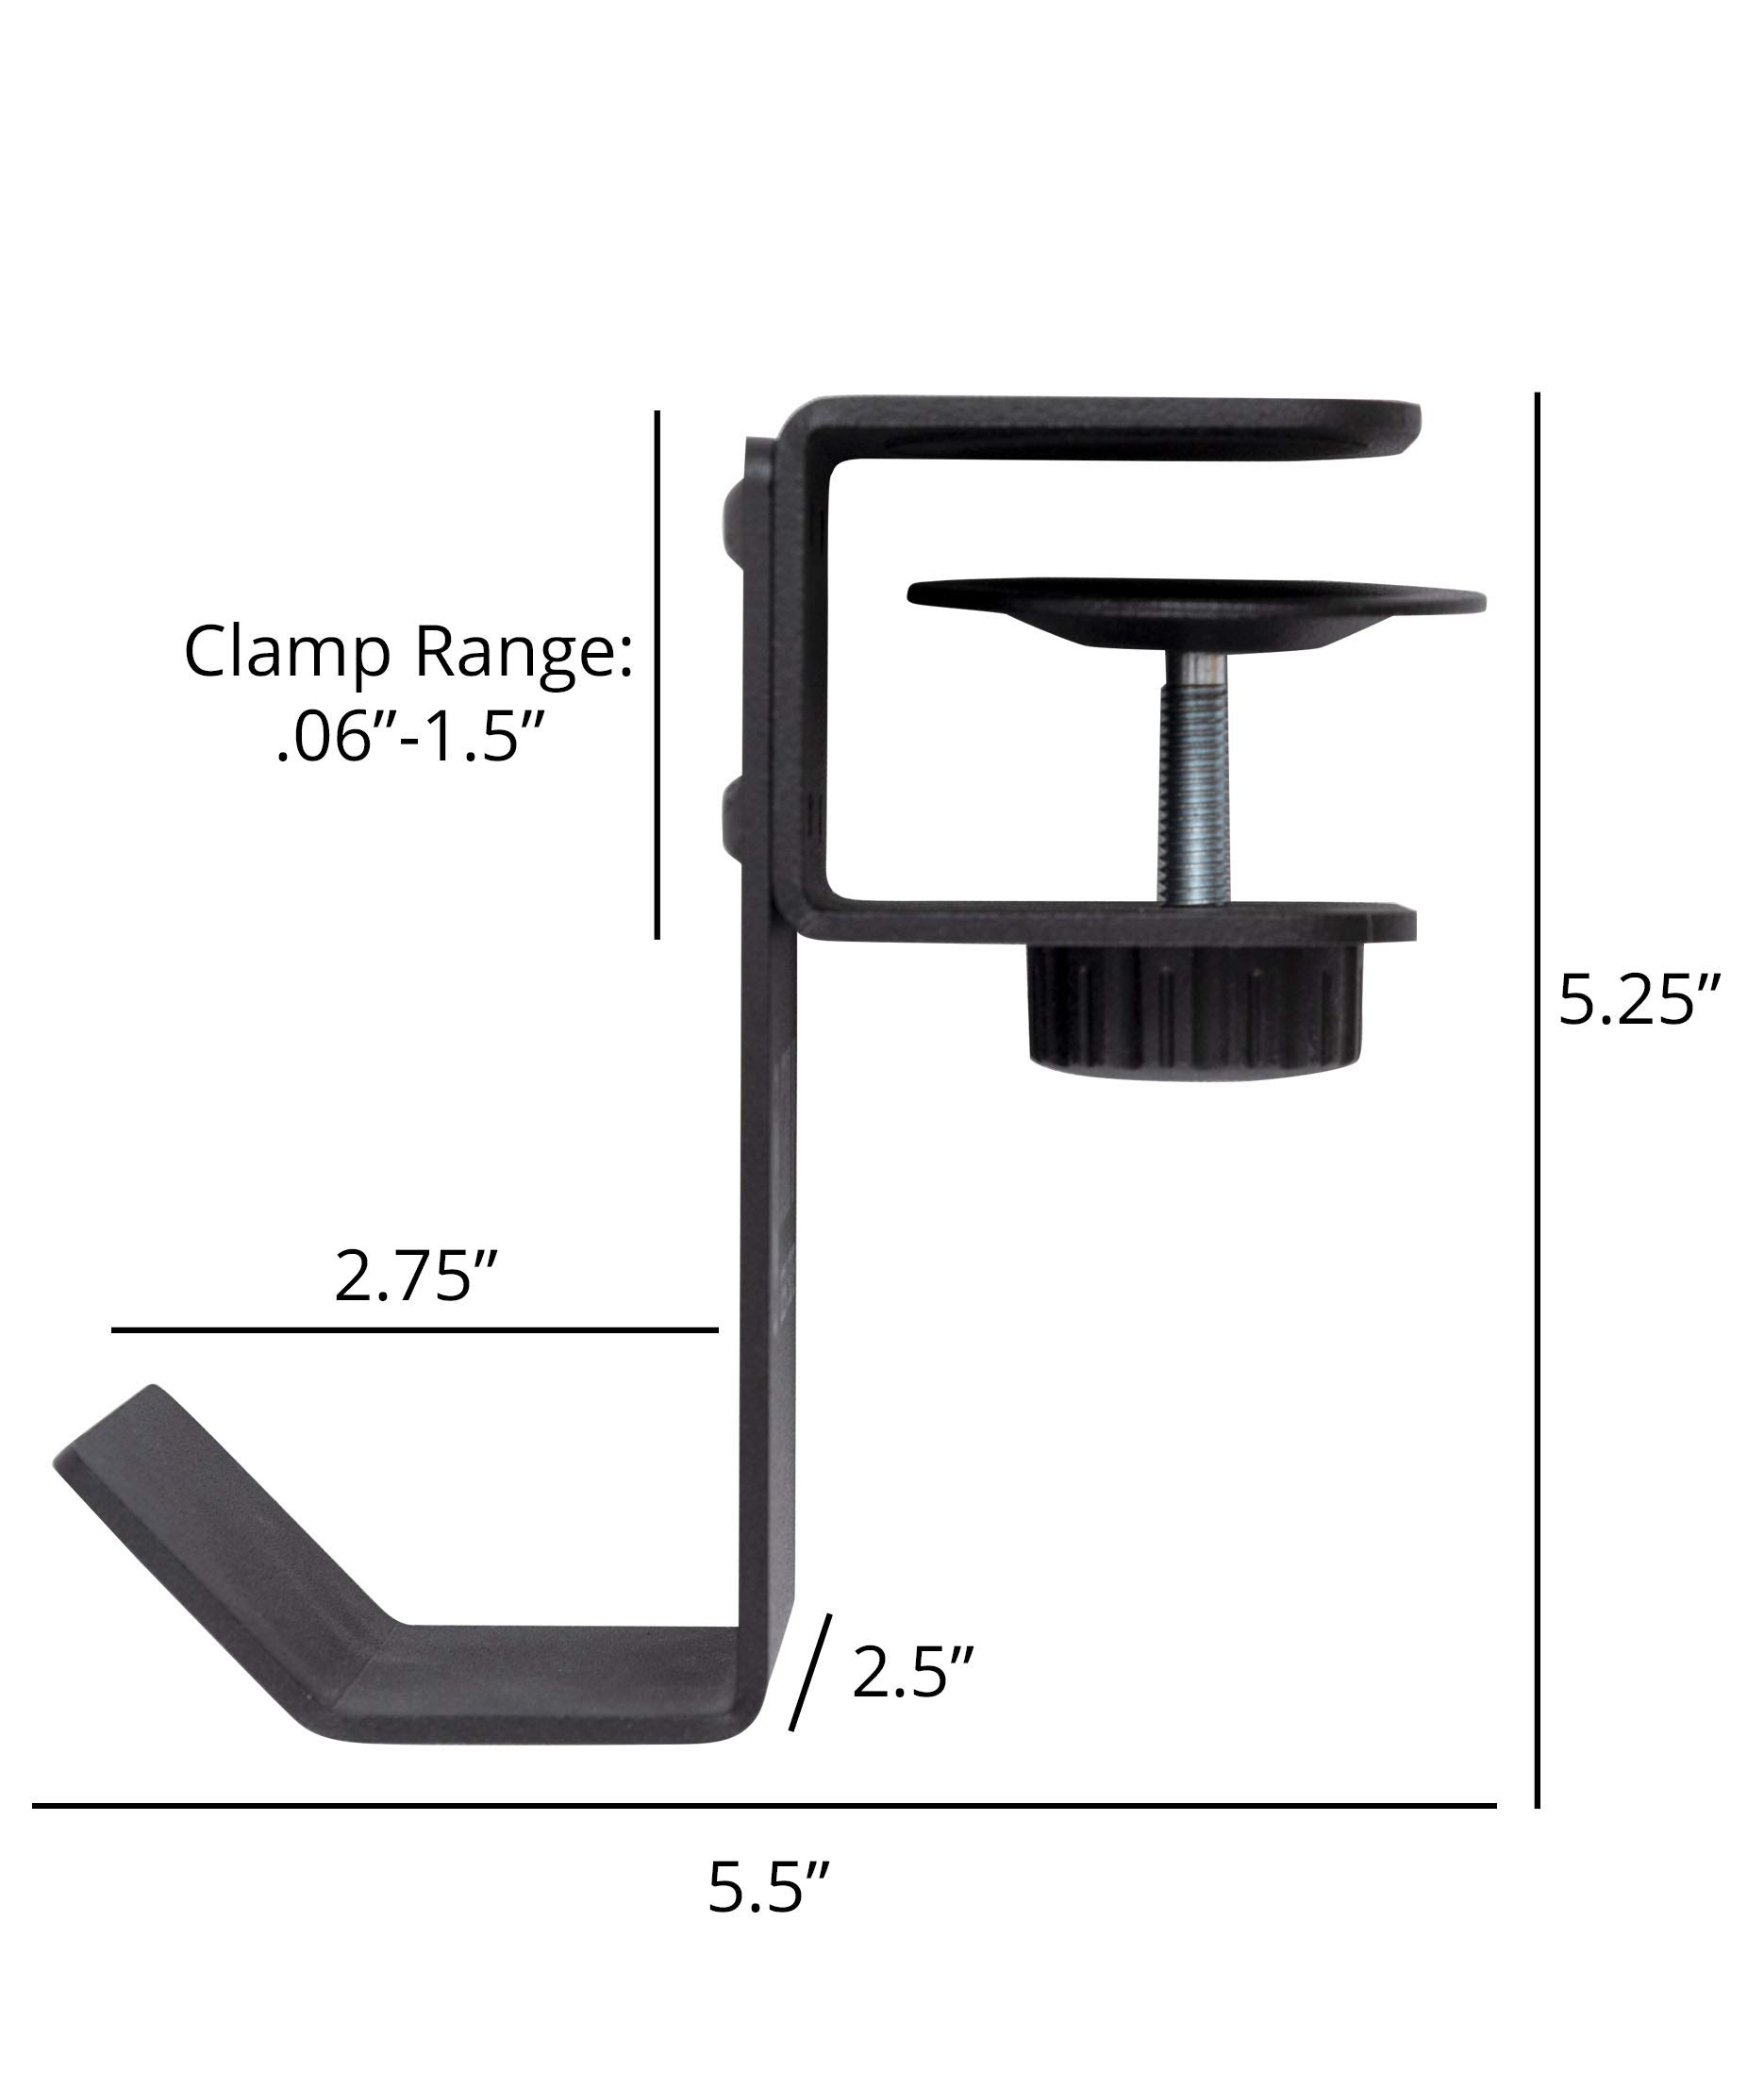 Stand Up Desk Store Clamp-On Under Desk Headphone Hook, Backpack Hook, and Purse Hook for Desk - Black